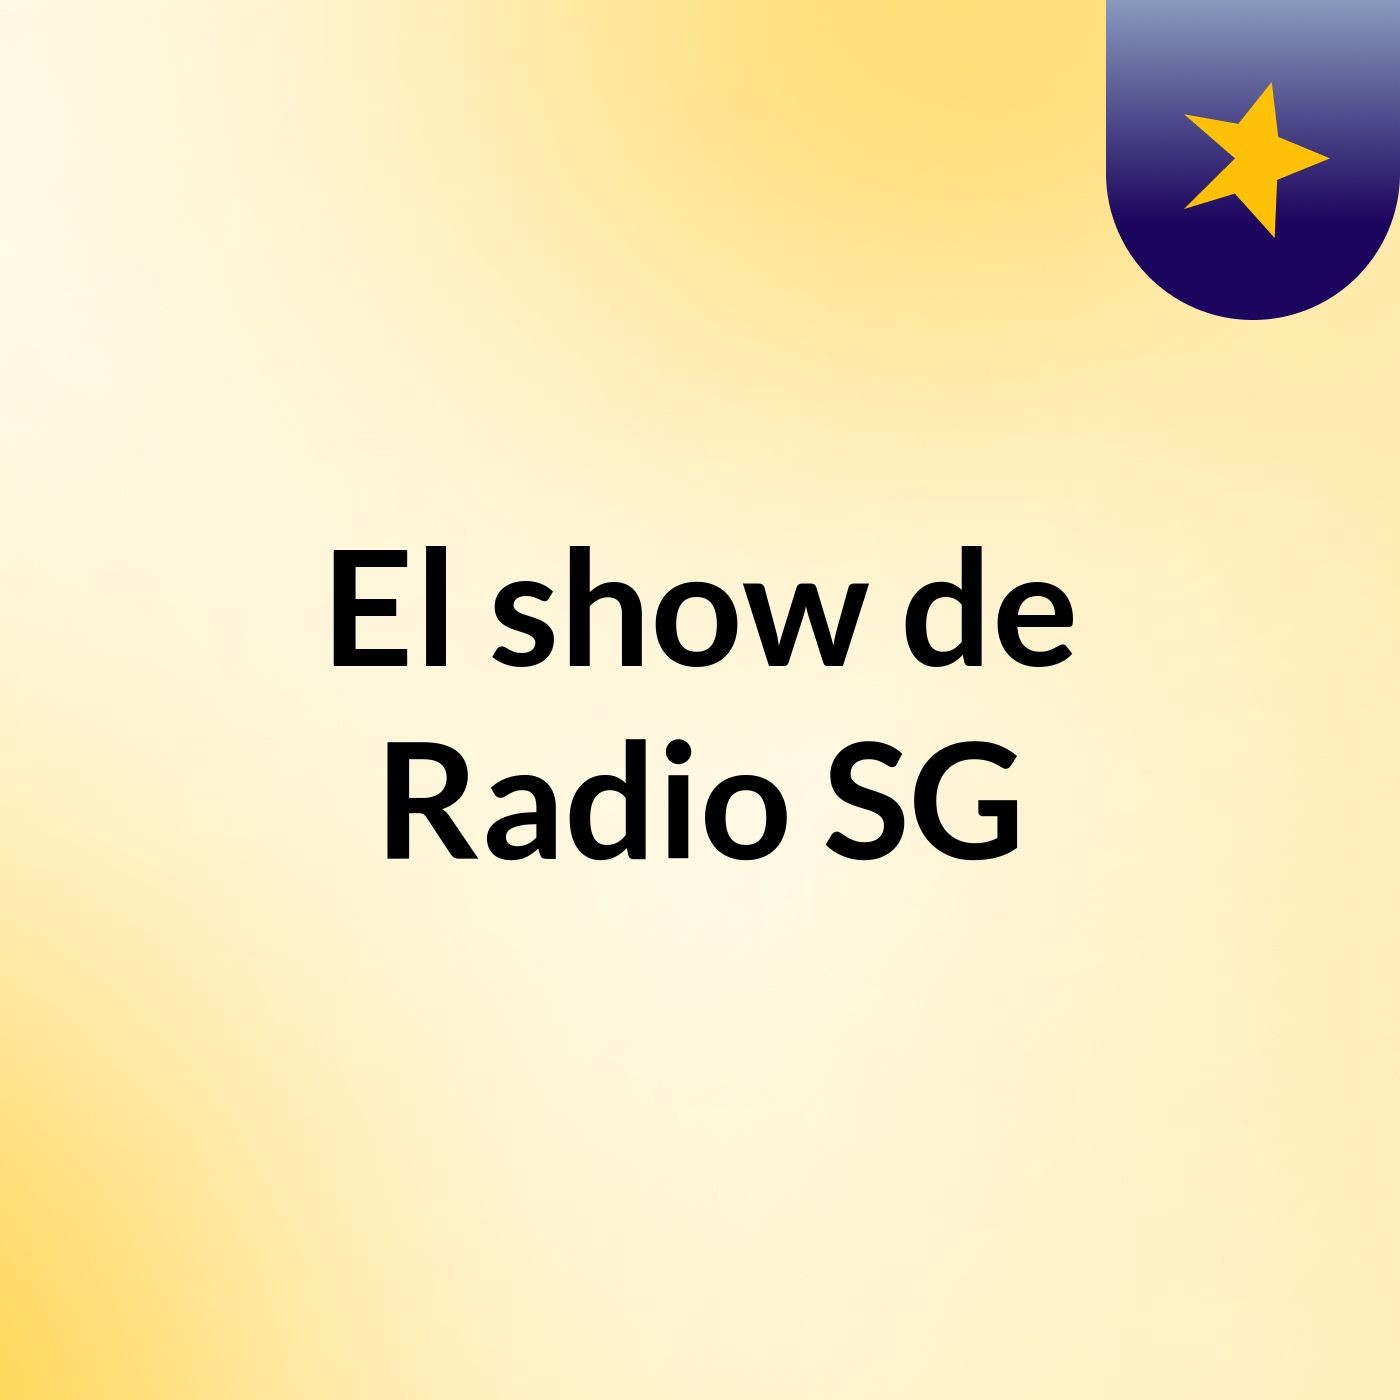 El show de Radio SG